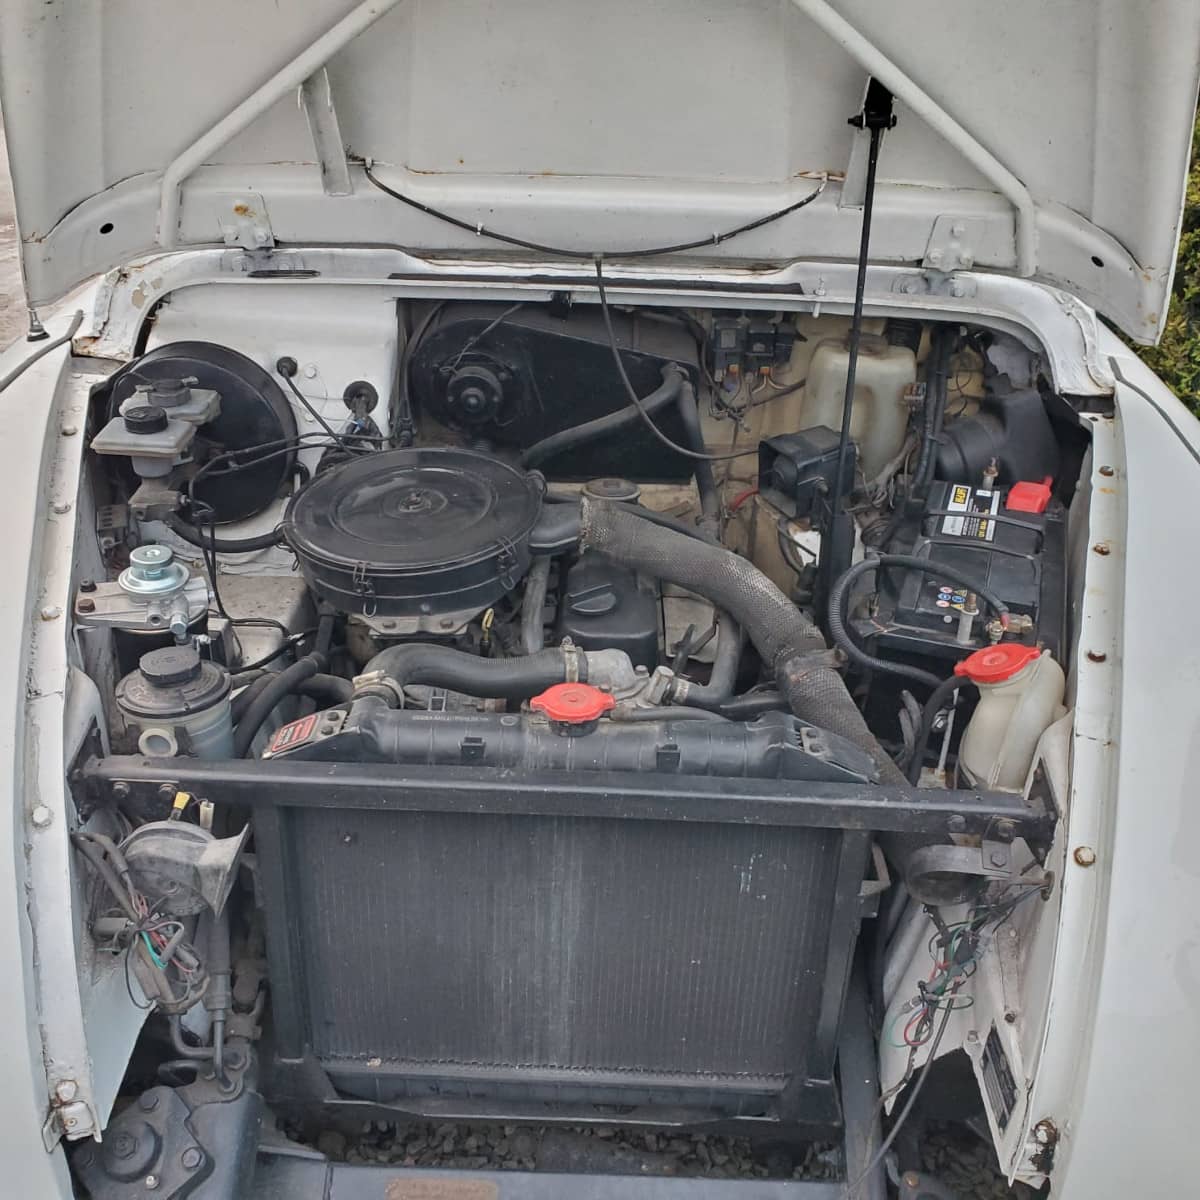 radiateur et compartiment moteur sous capot levé taxi anglais blanc